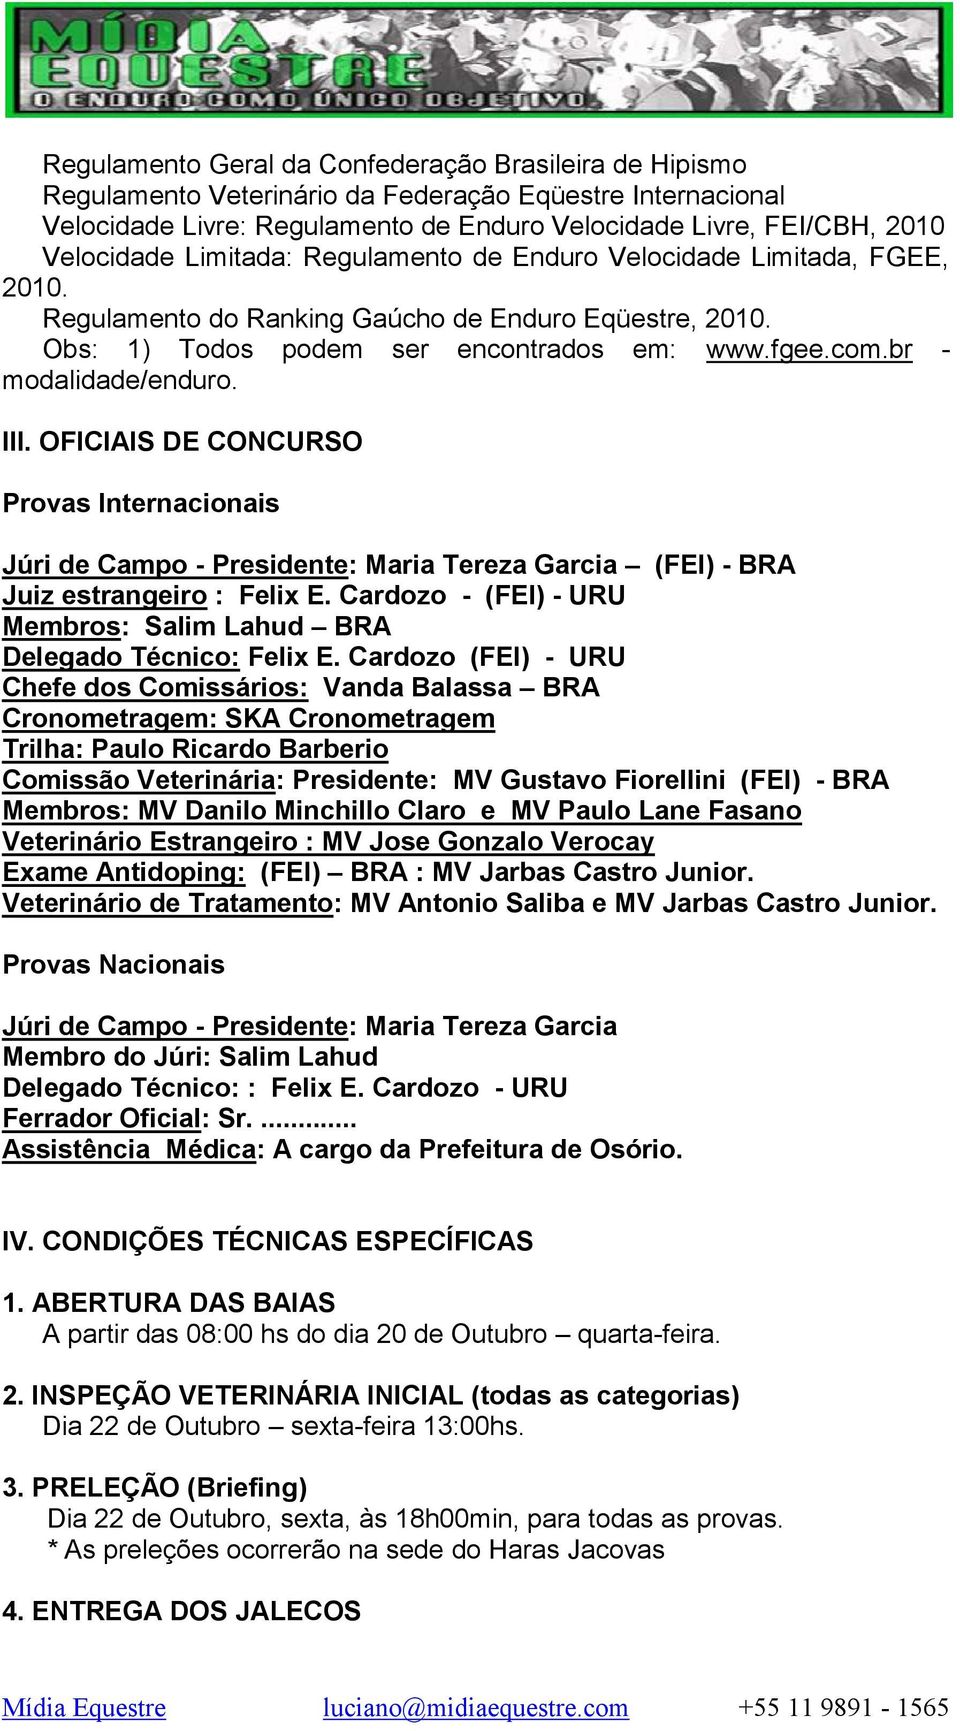 III. OFICIAIS DE CONCURSO Provas Internacionais Júri de Campo - Presidente: Maria Tereza Garcia (FEI) - BRA Juiz estrangeiro : Felix E.